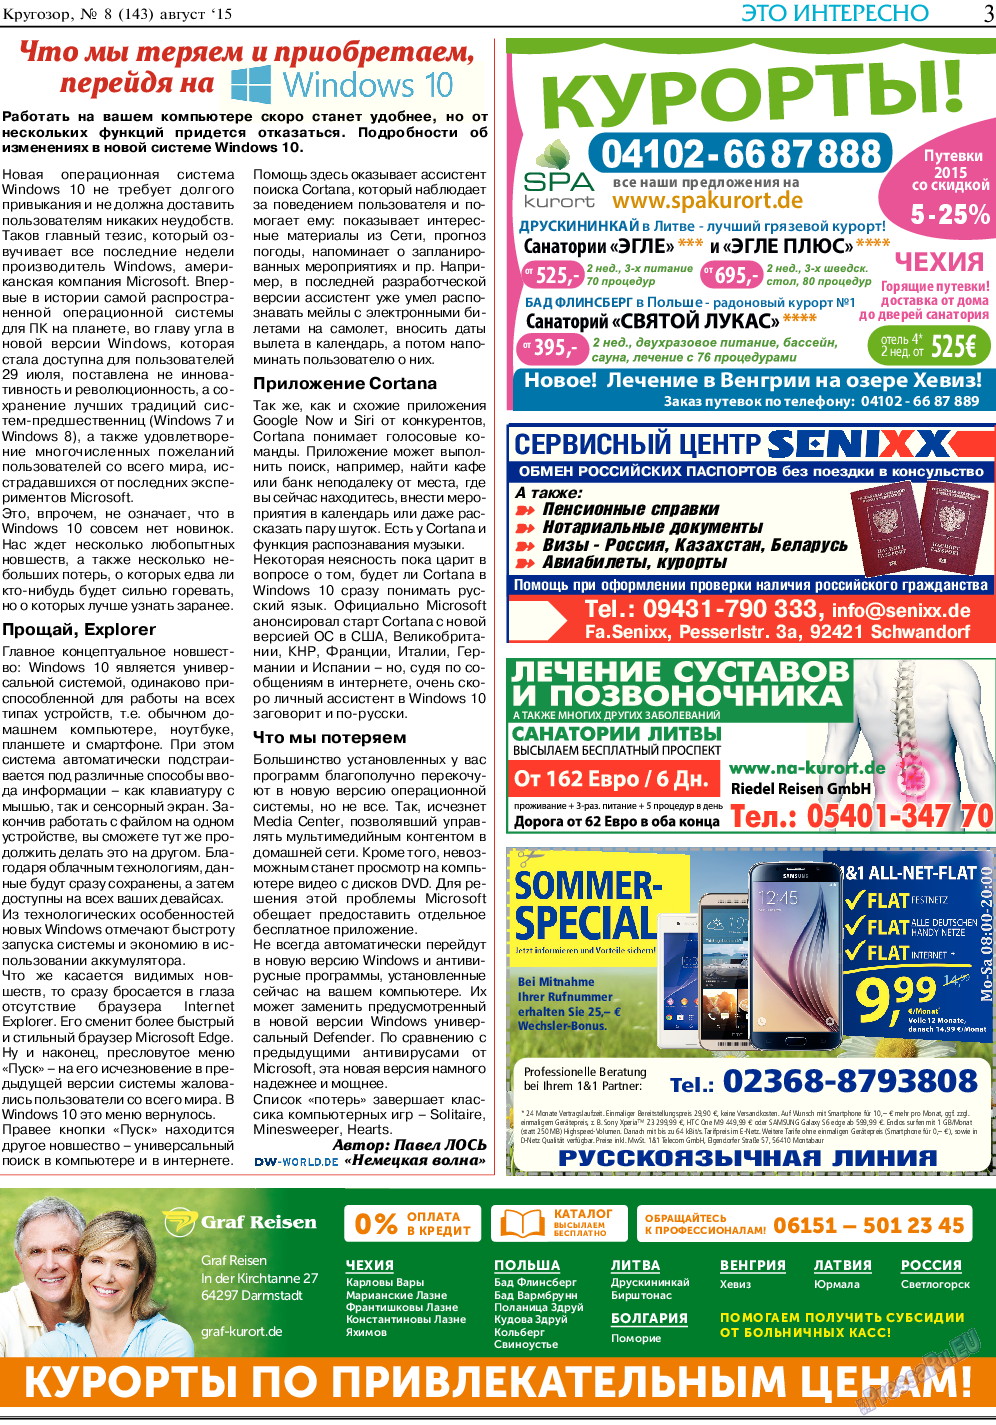 Кругозор (газета). 2015 год, номер 8, стр. 3